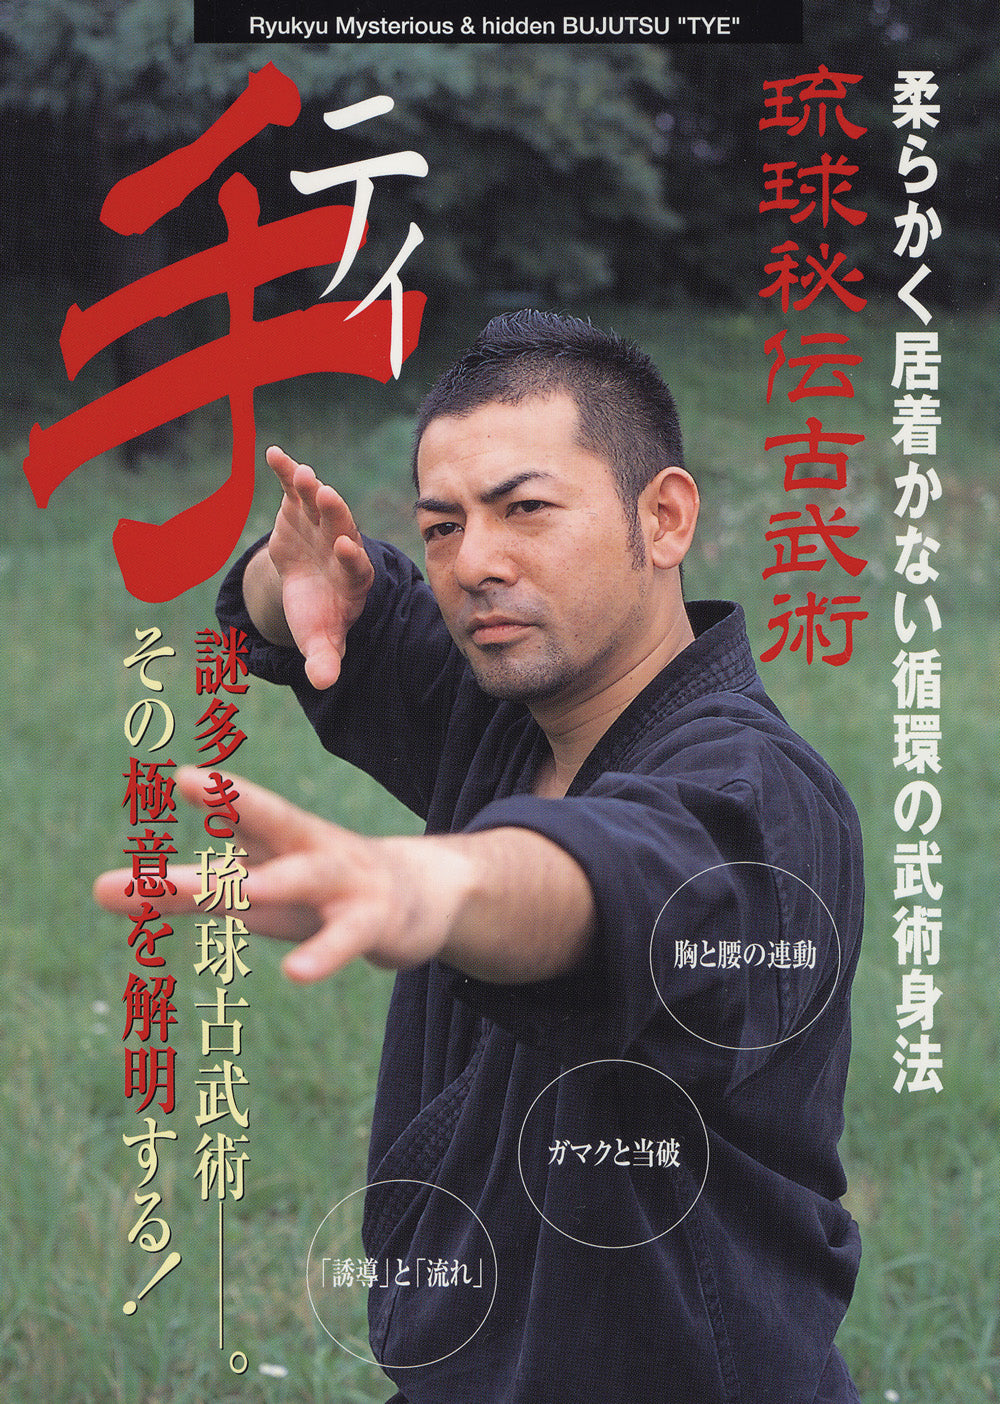 Ryukyu Mysterious Bujutsu: Te DVD by Keishiro Shiroma